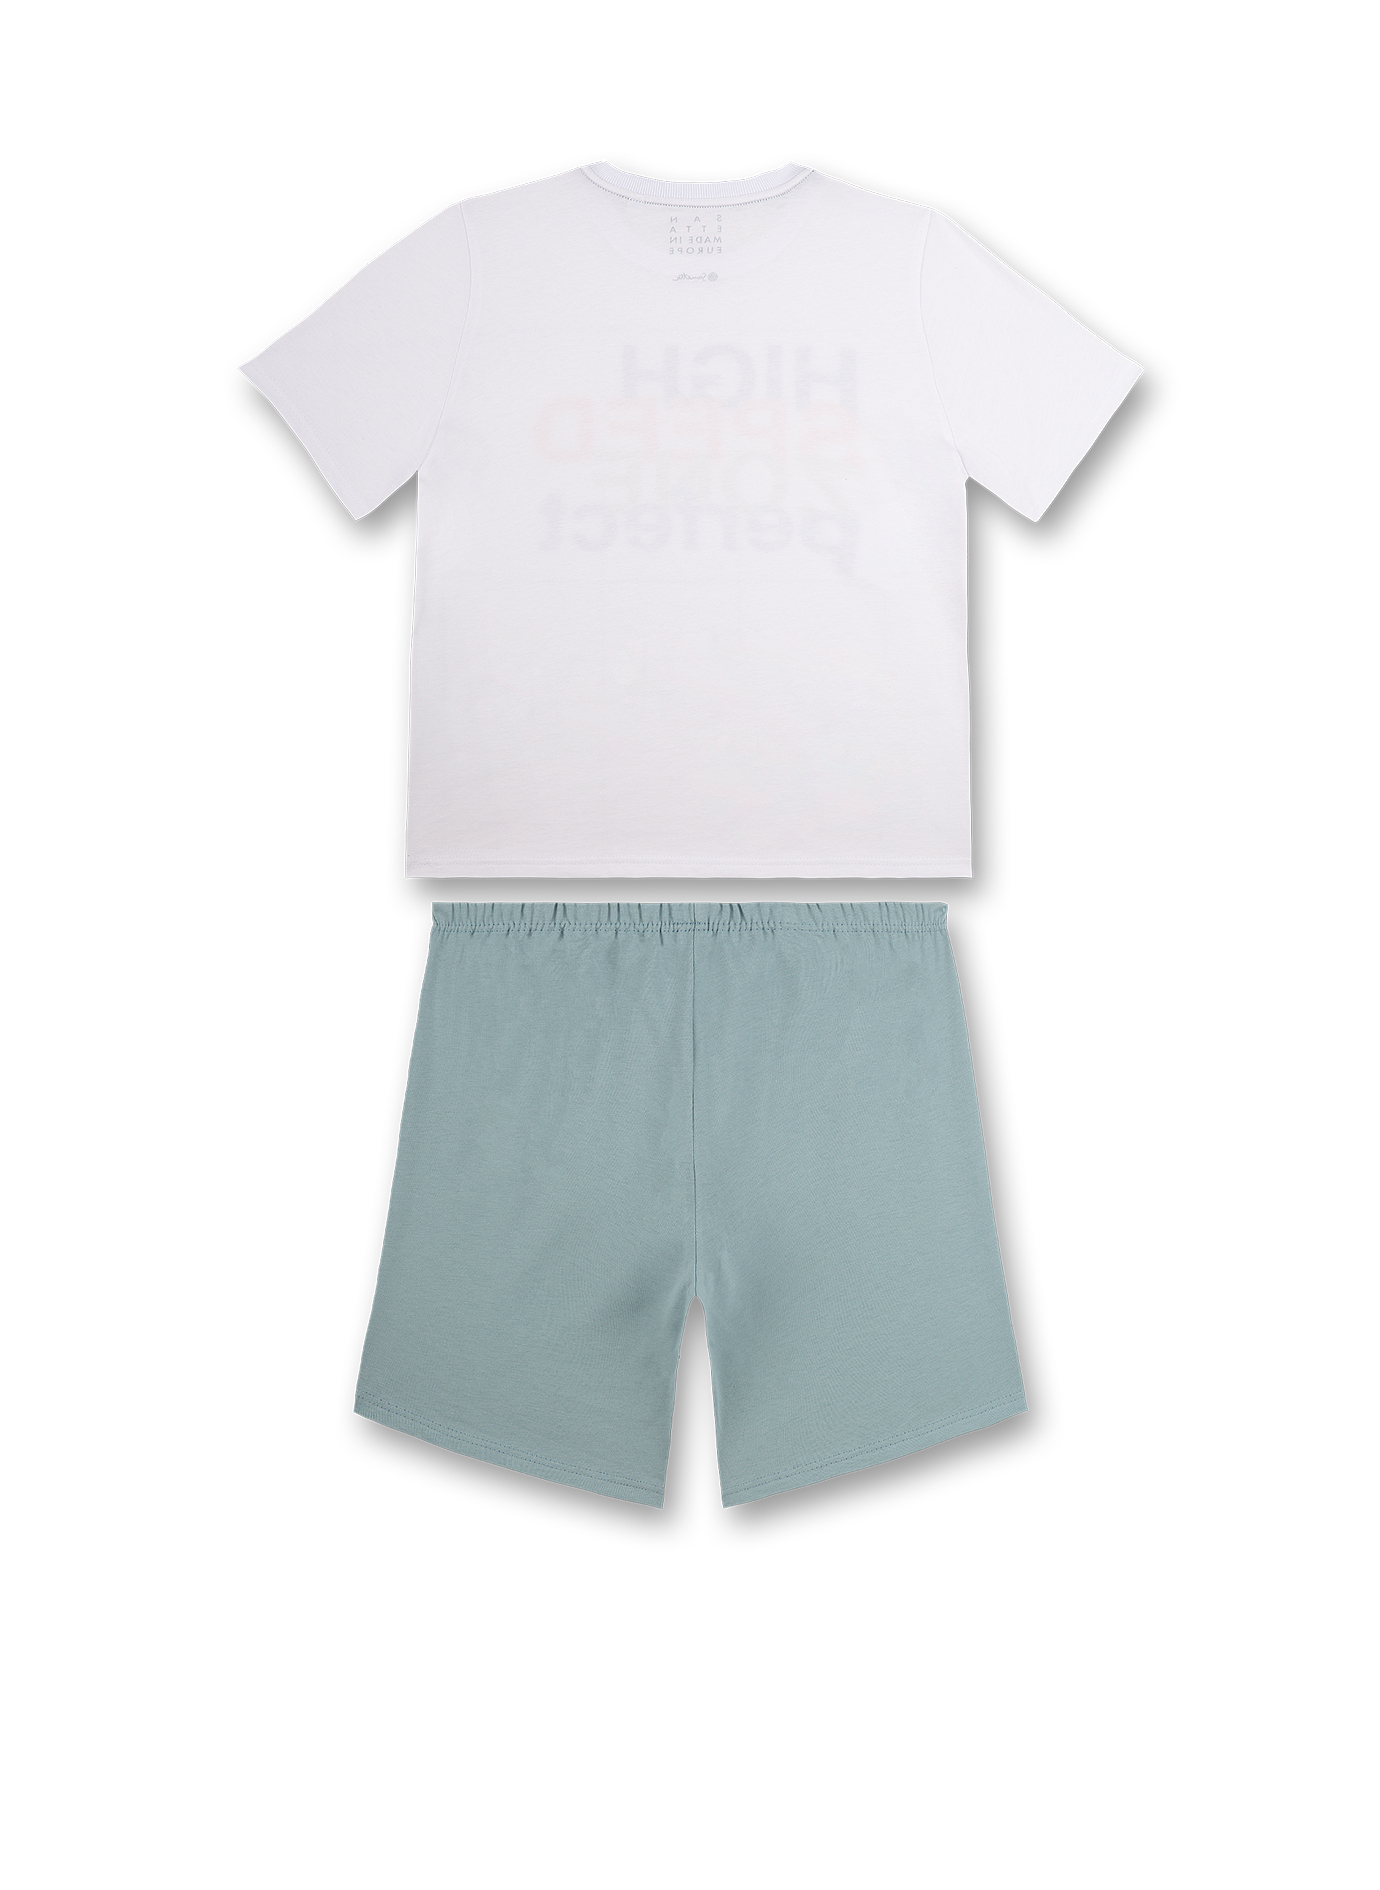 Jungen-Schlafanzug kurz Weiß Seaventure